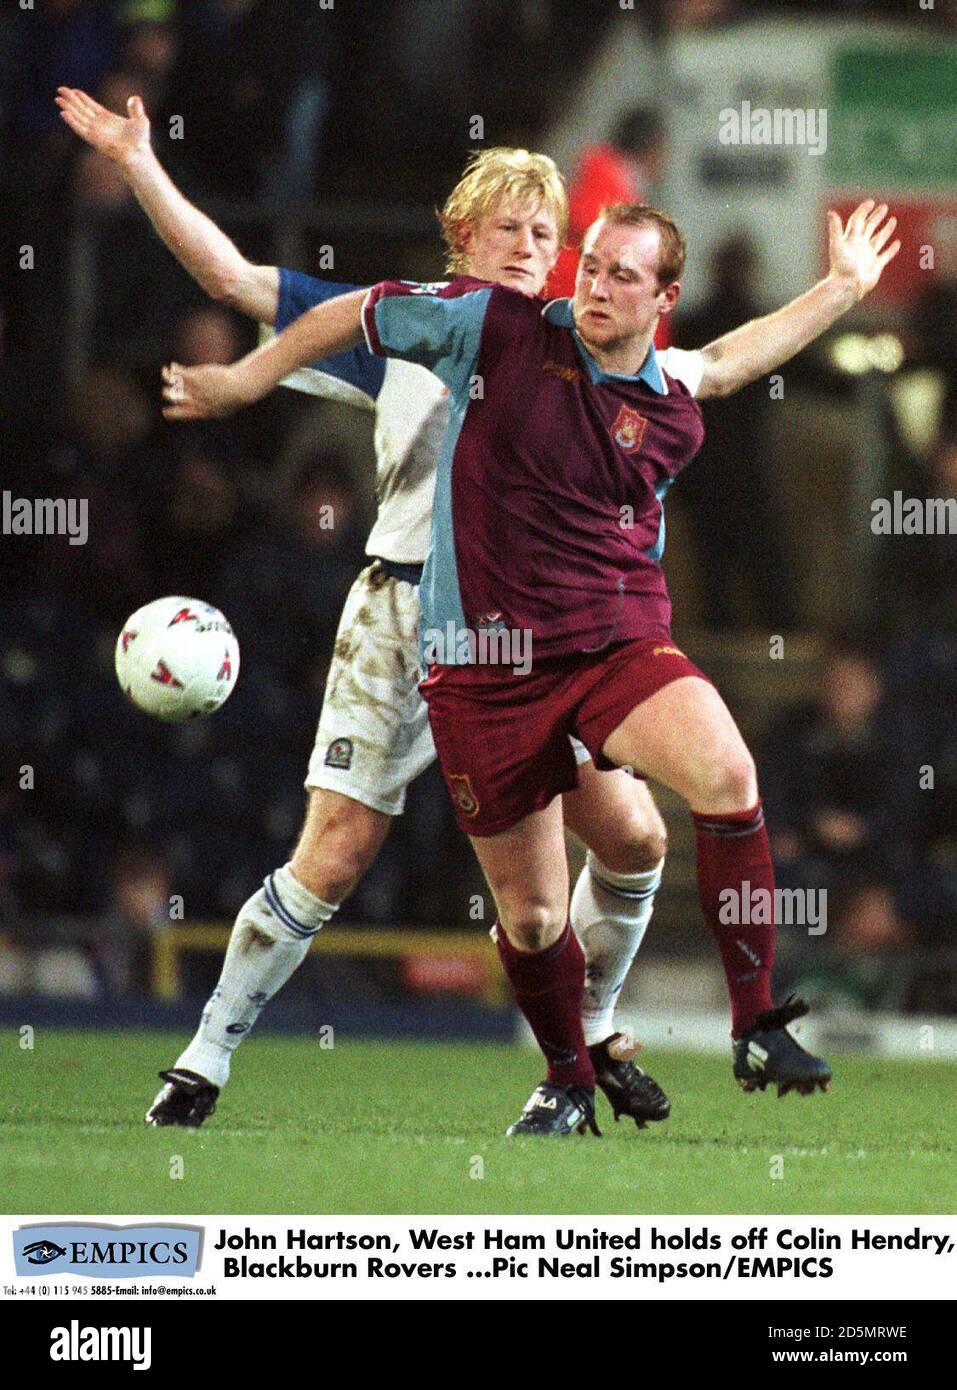 John Hartson, West Ham United tiene fuori Colin Hendry, Blackburn Rovers Foto Stock